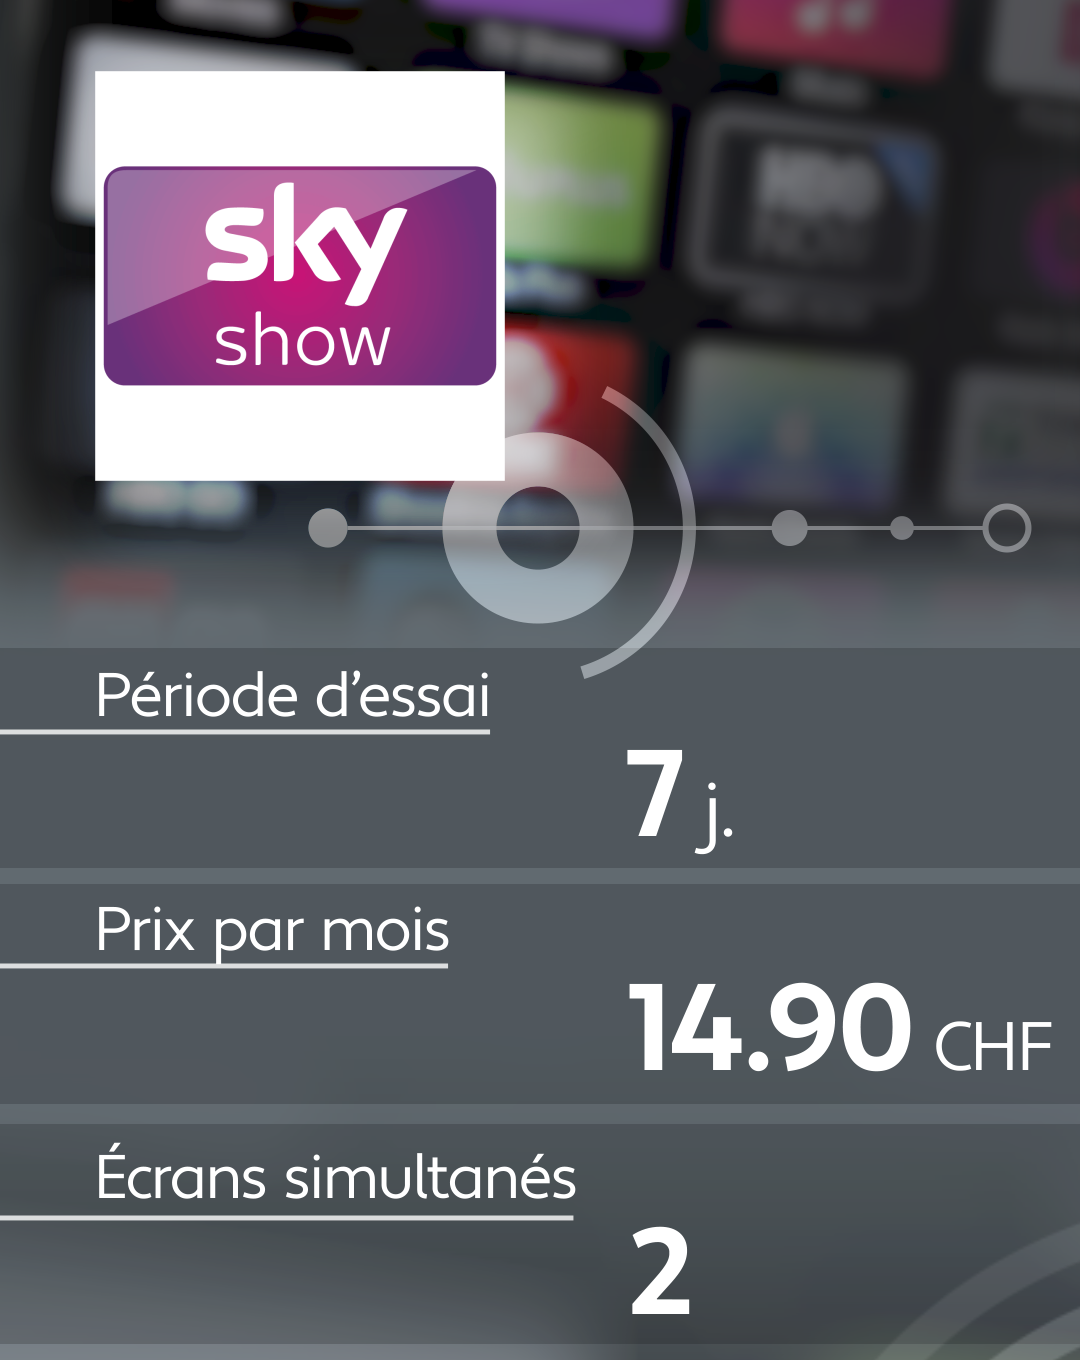 Conditions d'abonnement de quelques plateformes de streaming: sky show.